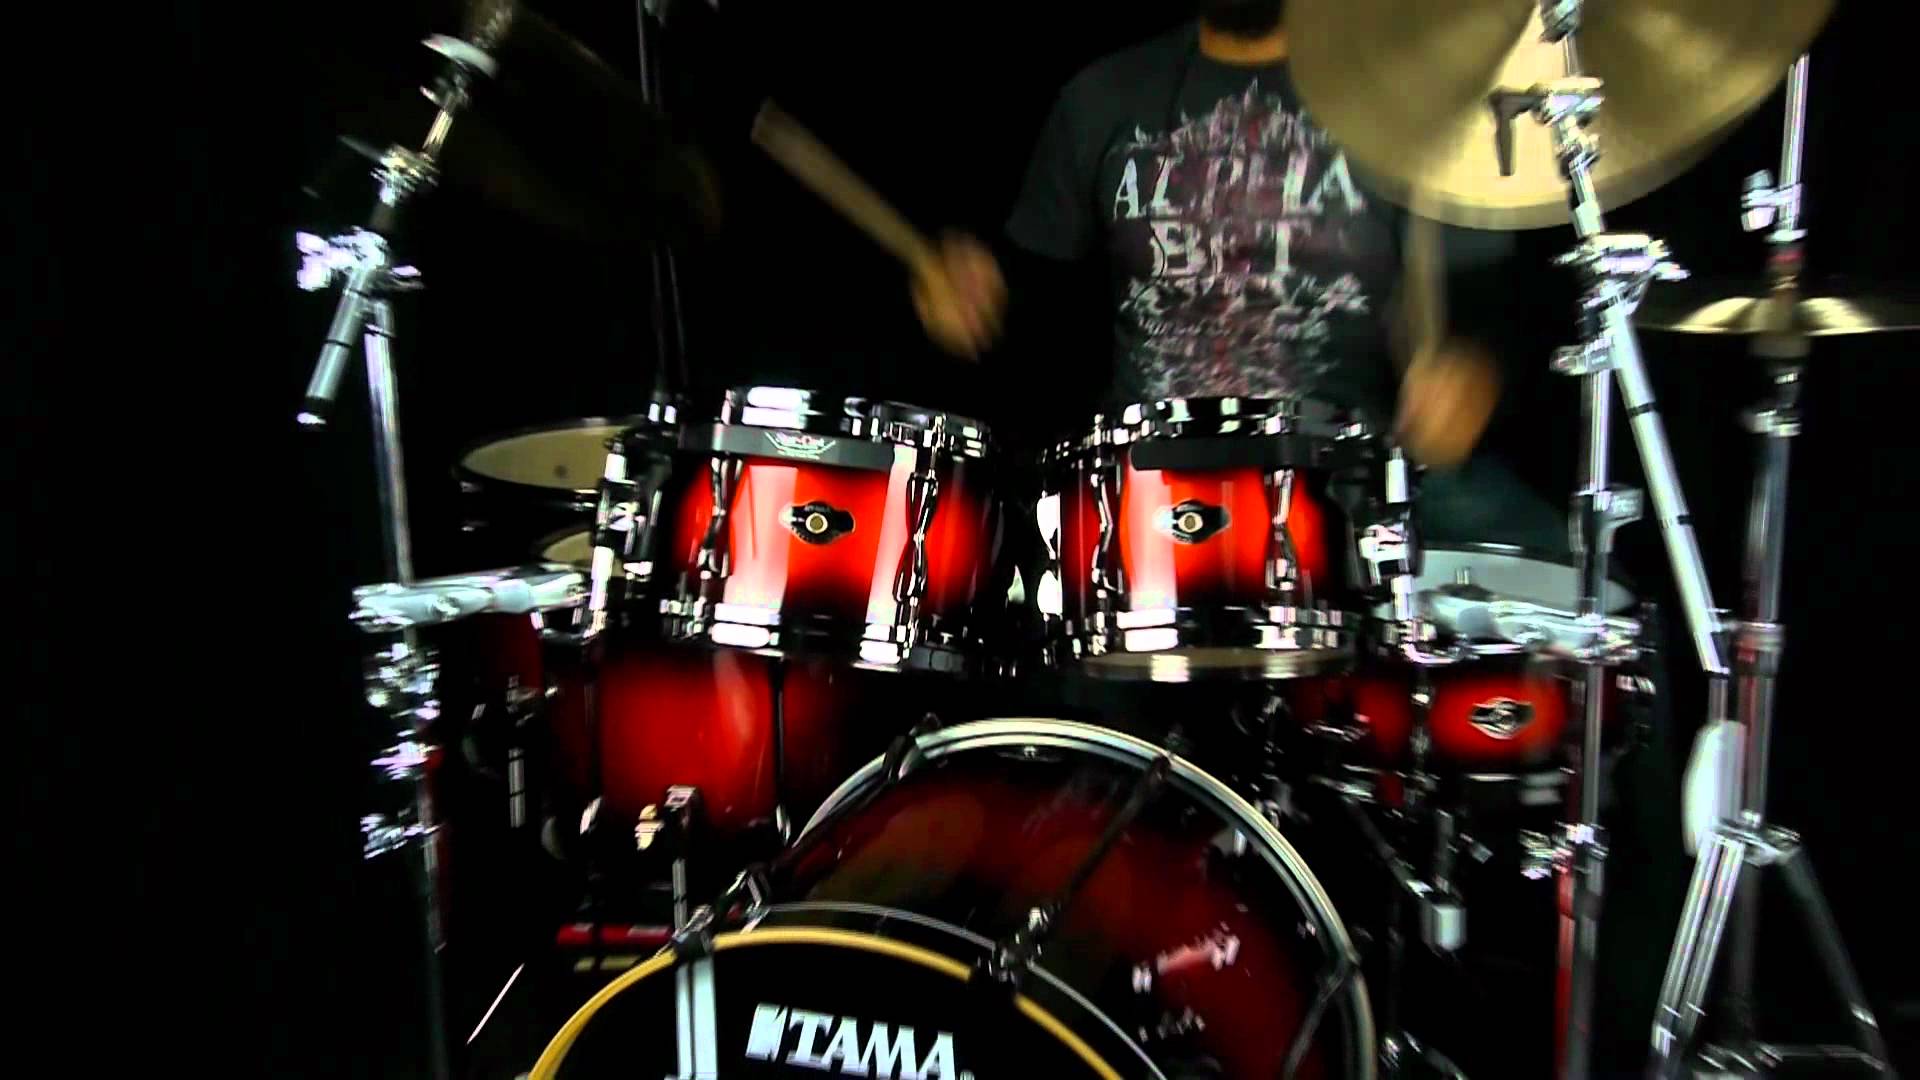 Tama Drums Wallpaper